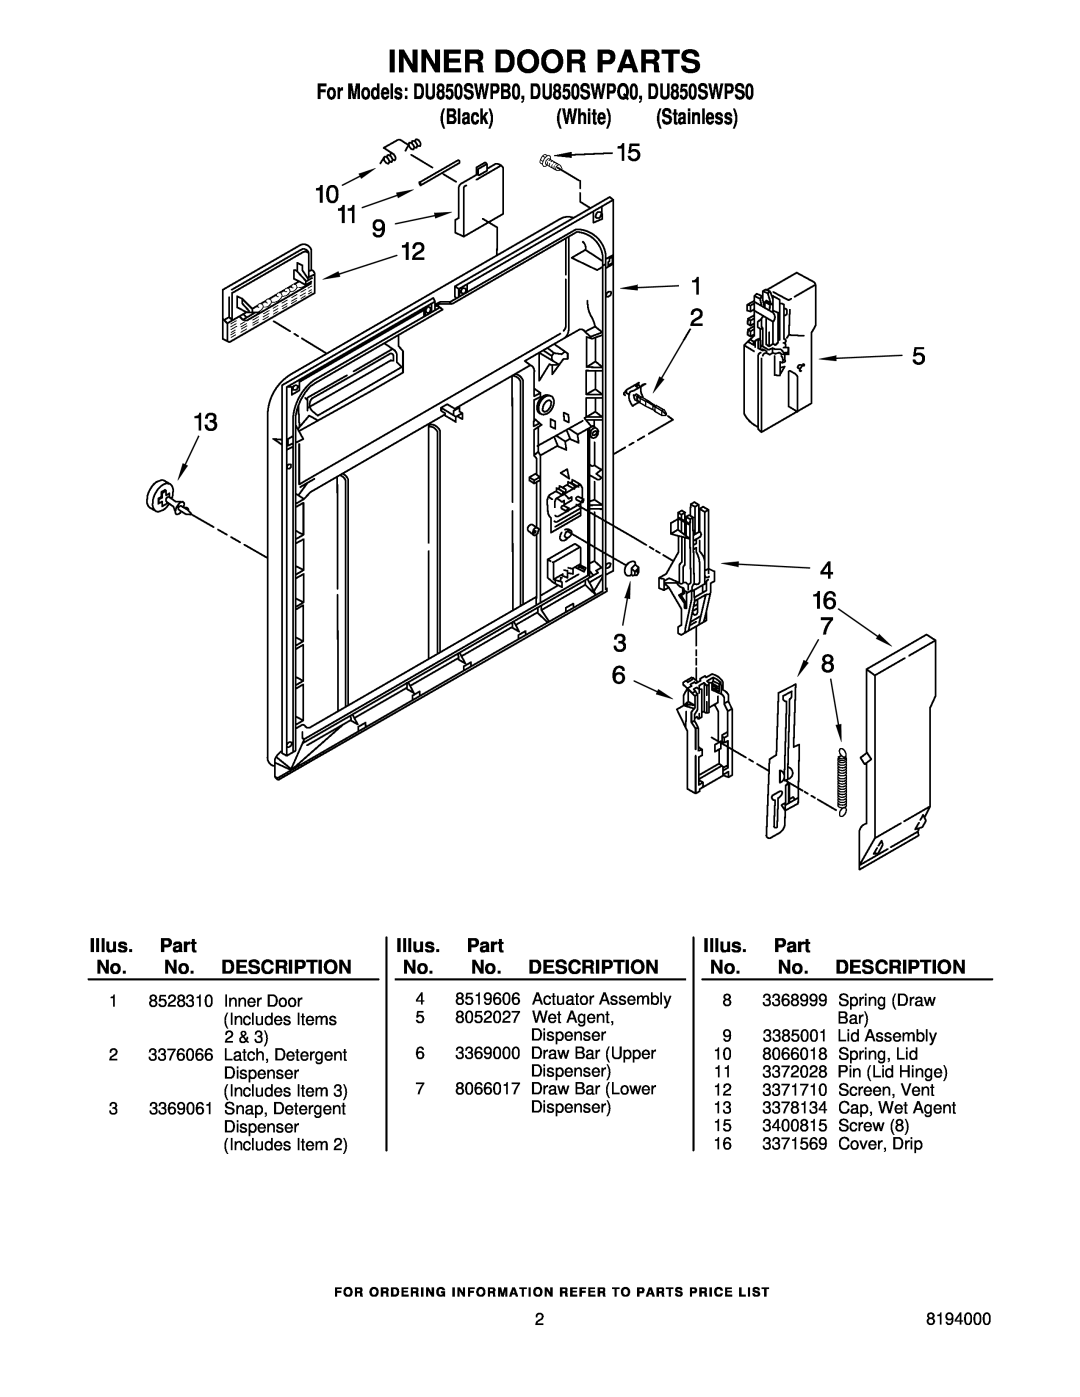 Whirlpool manual Inner Door Parts, For Models DU850SWPB0, DU850SWPQ0, DU850SWPS0, Black White Stainless 